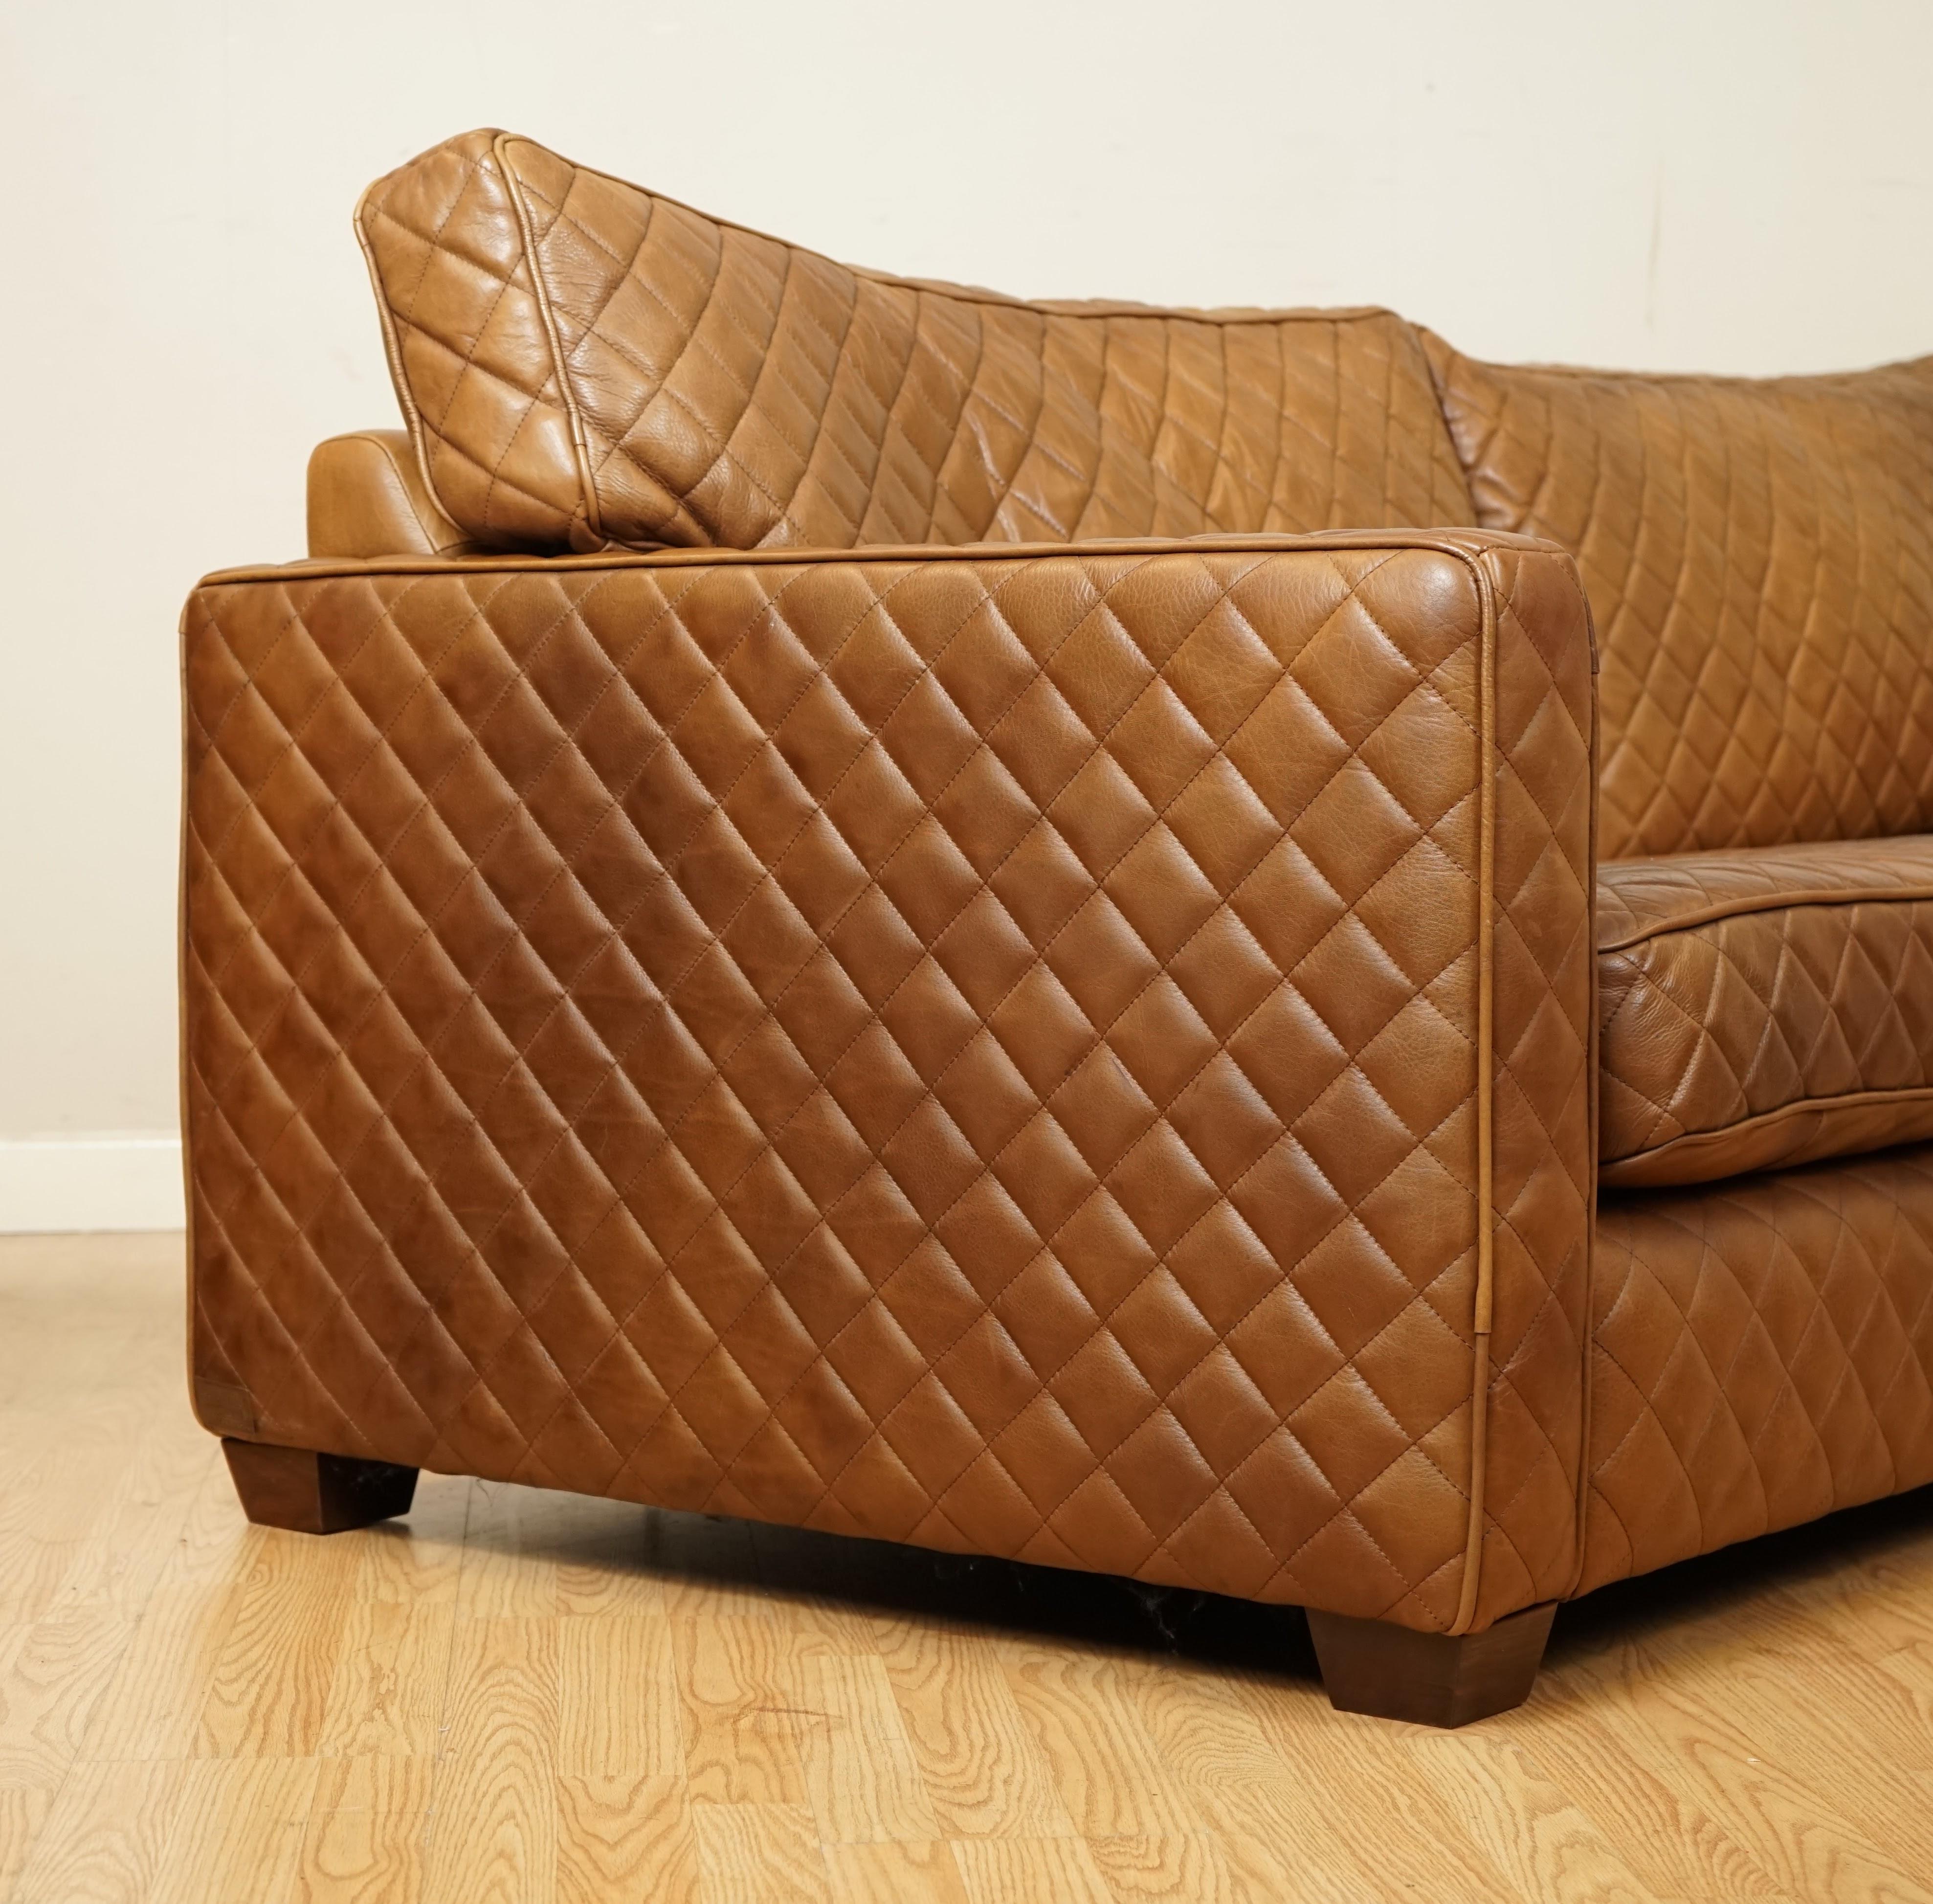 timothy oulton sofa price